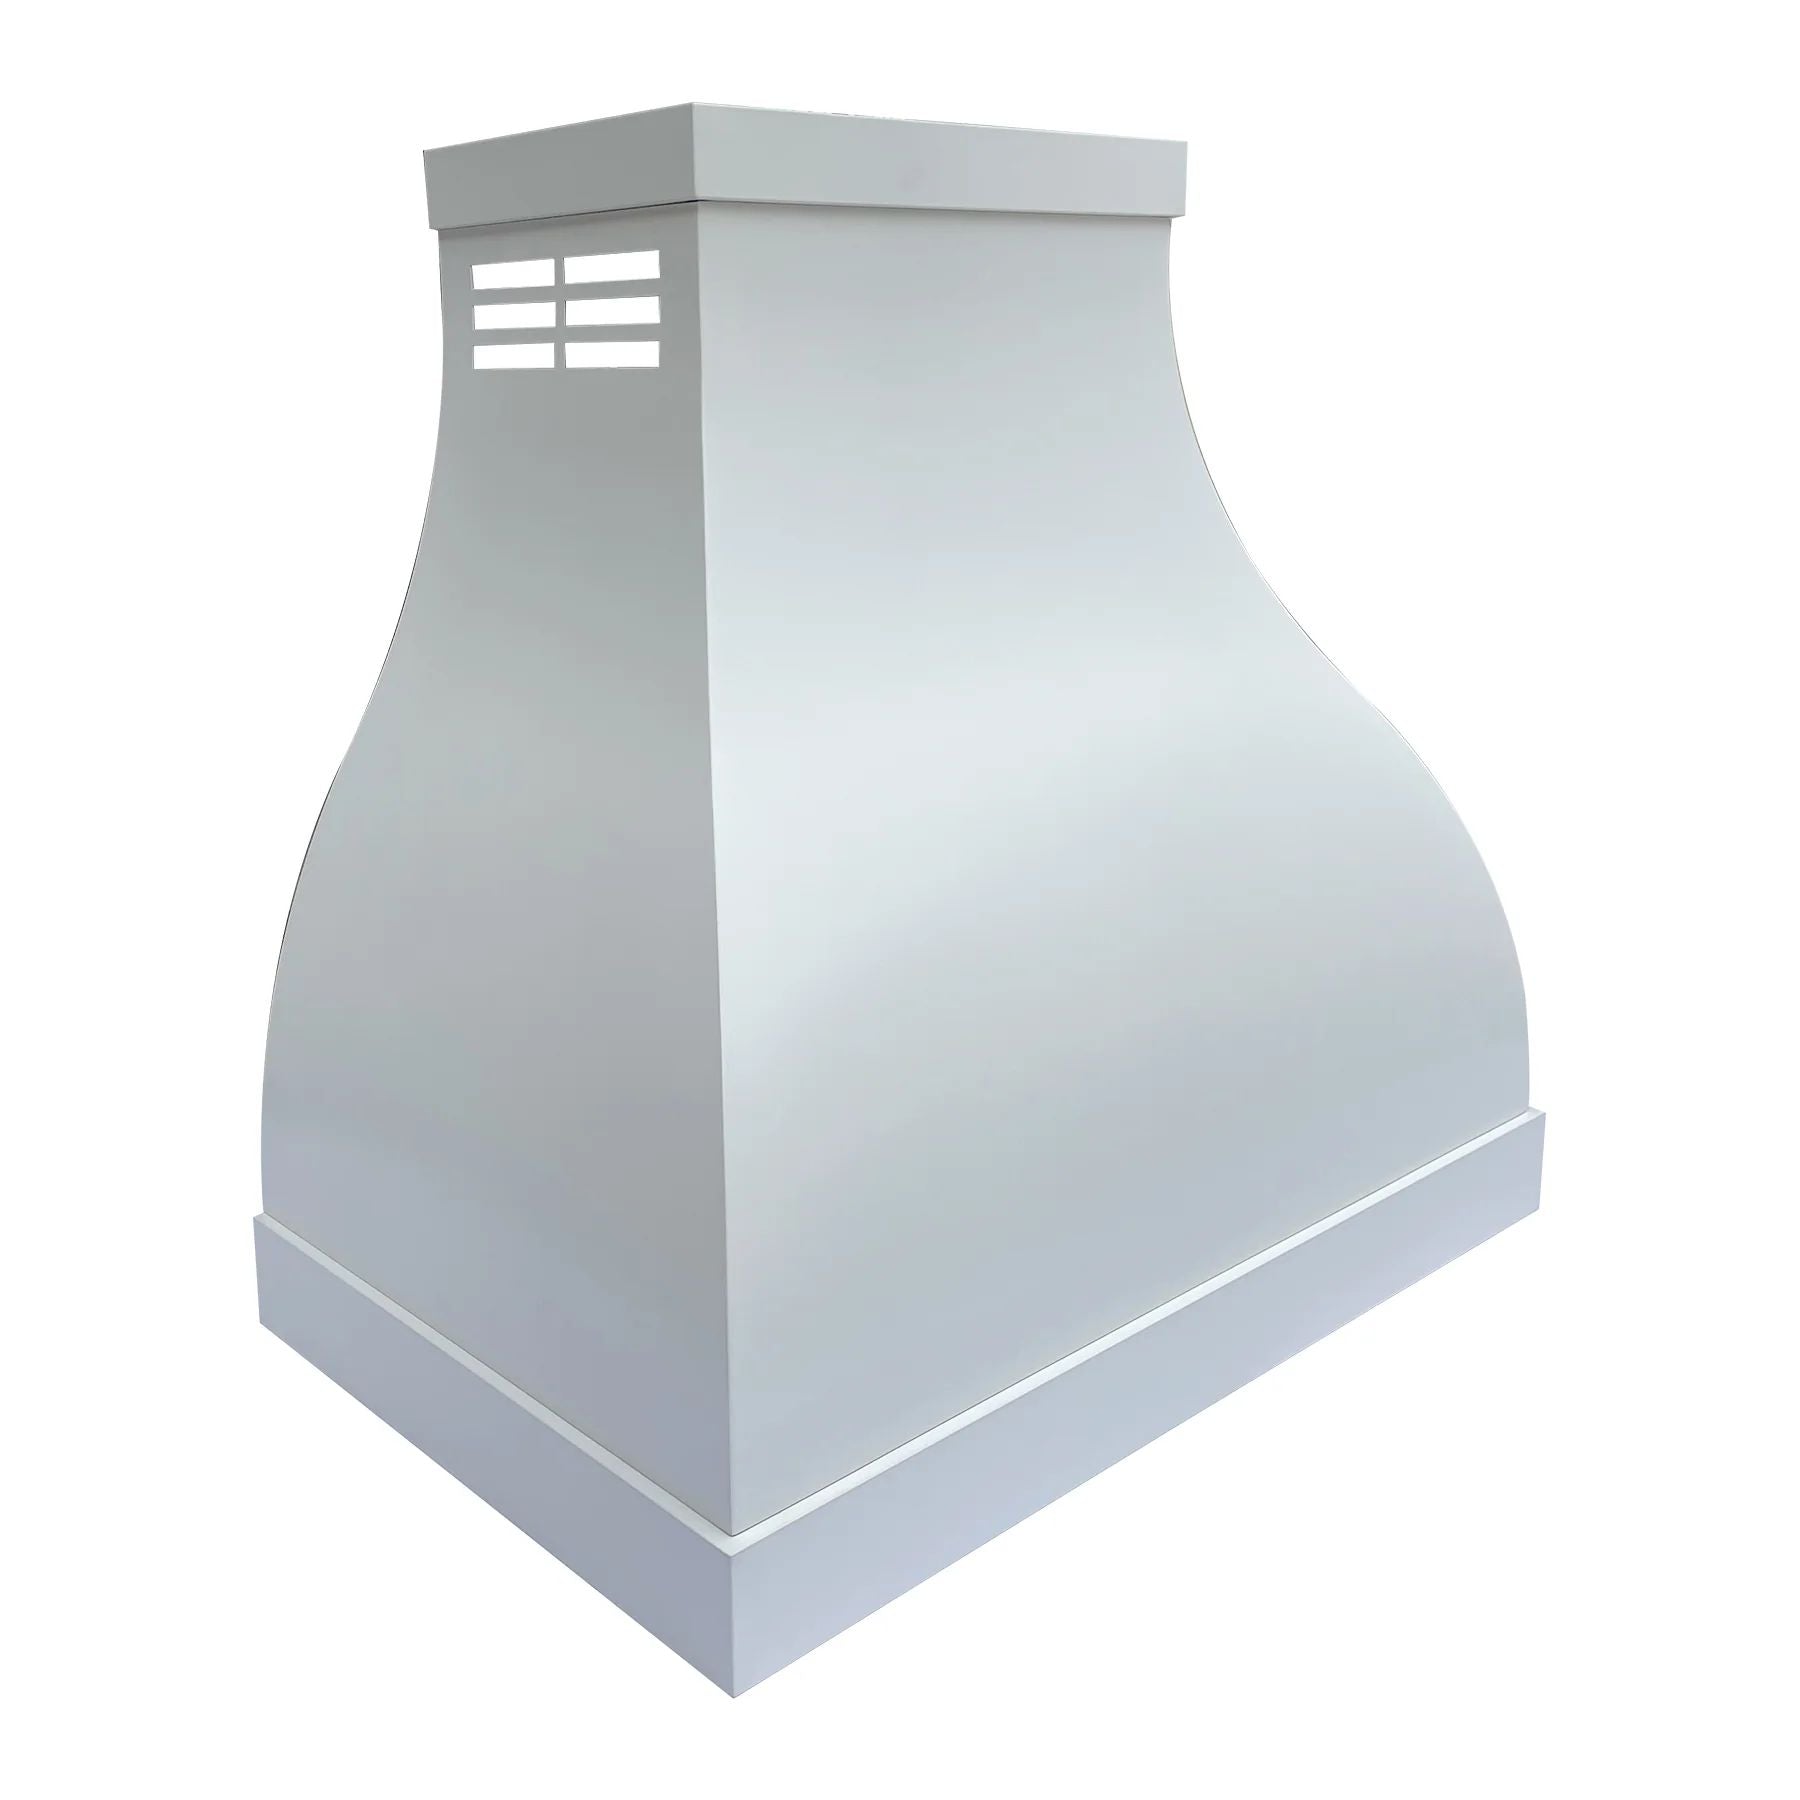 Fobest Instock White Stainless Steel Ductless Range Hood FSS-12 (40"W x 39"H x 25"D) - Fobest Appliance